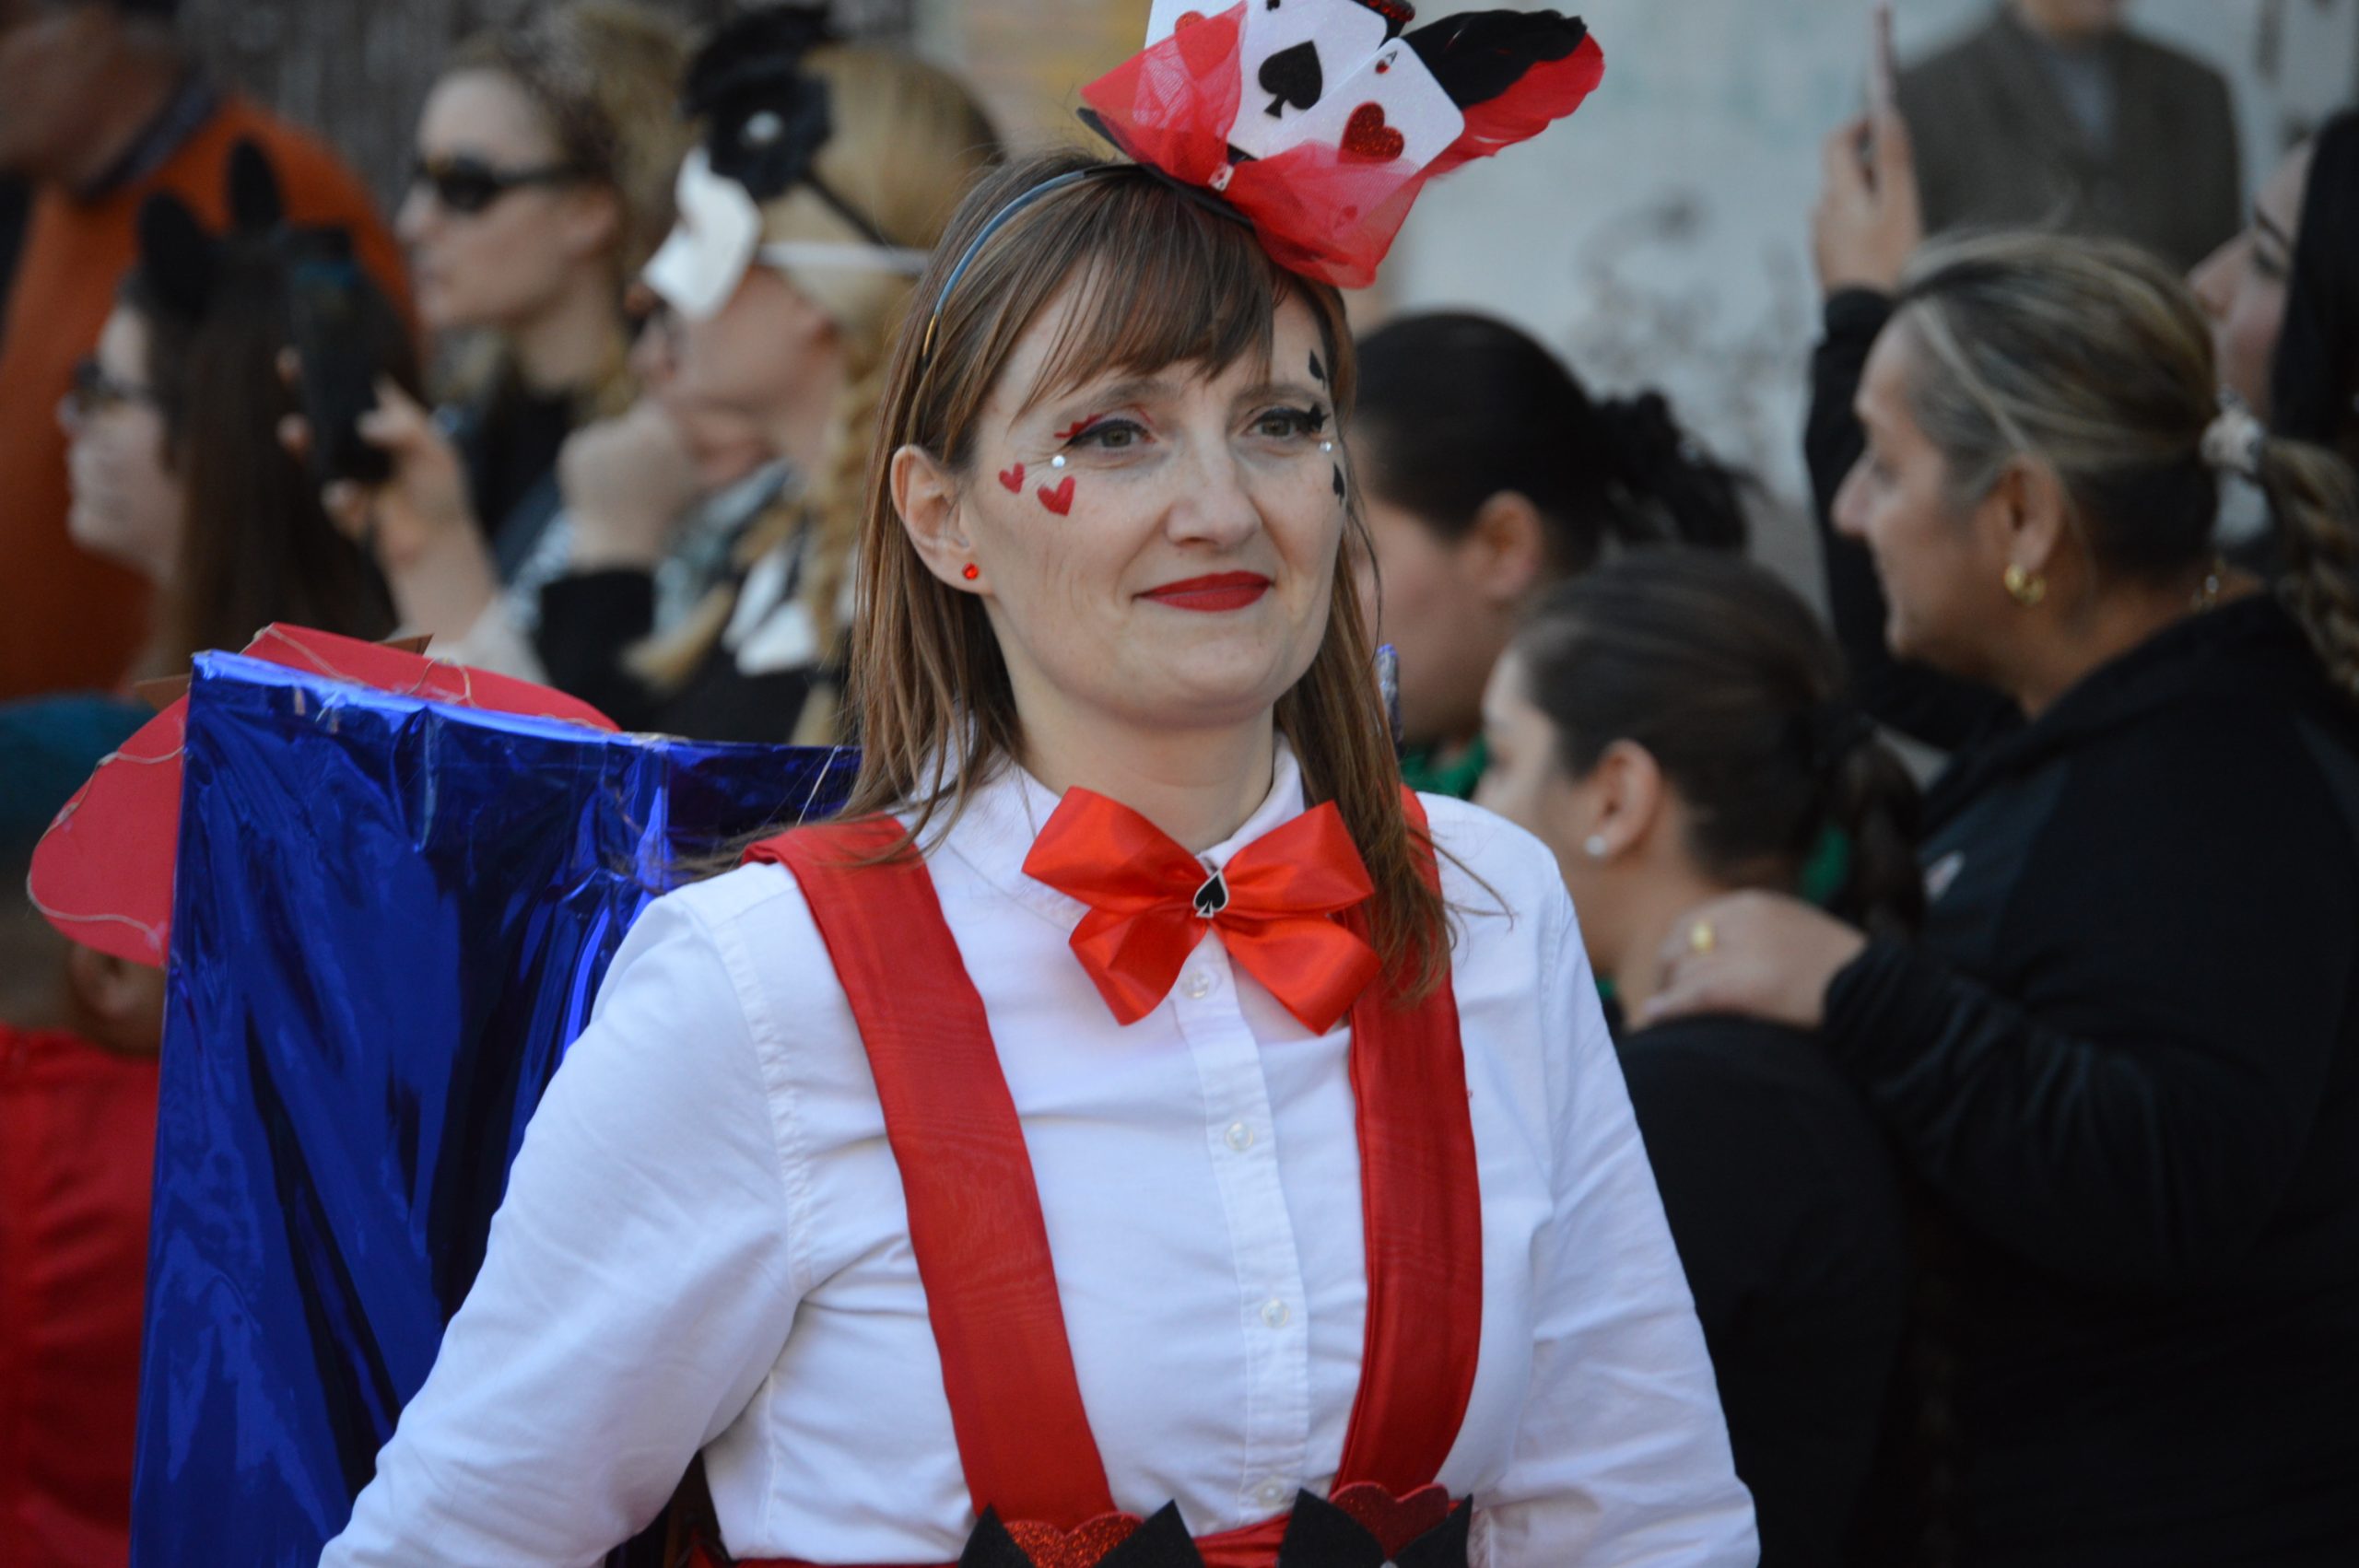 Carnavales en Ponferrada, el sol saca a la calle a miles de ponferradinos para disfrutar del desfile 13